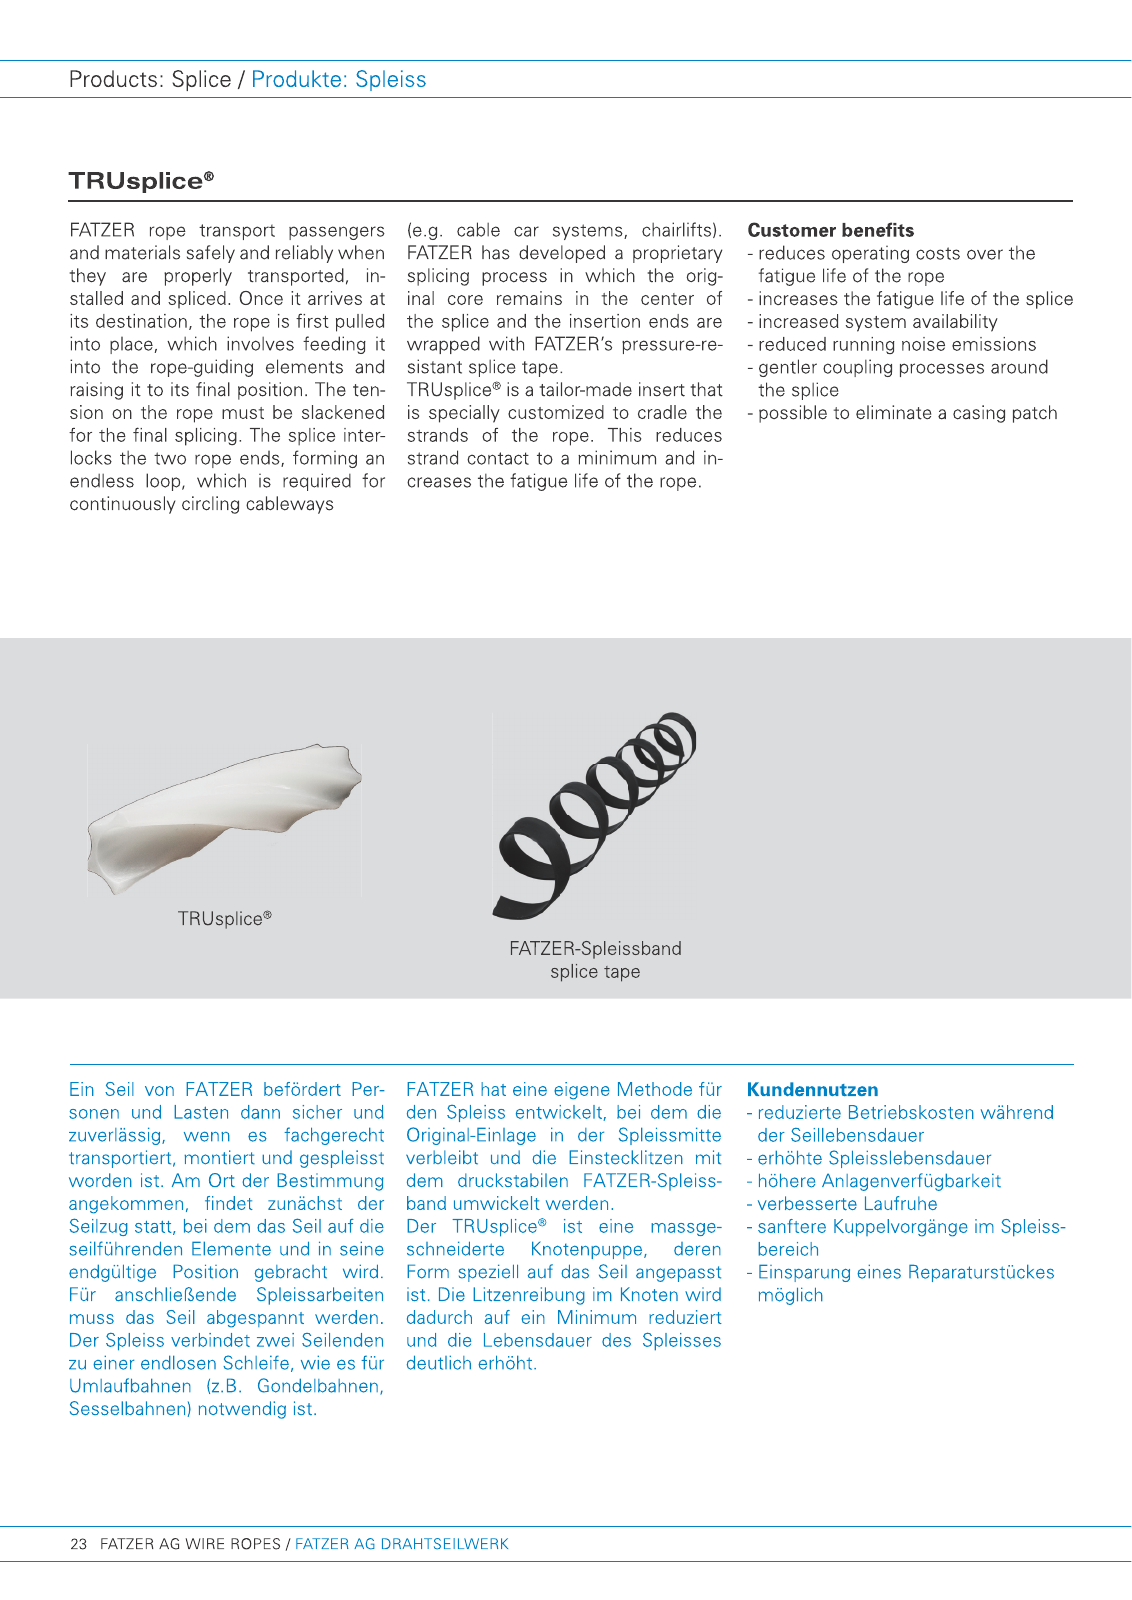 Vorschau FATZER Company Brochure 2015 Seite 24